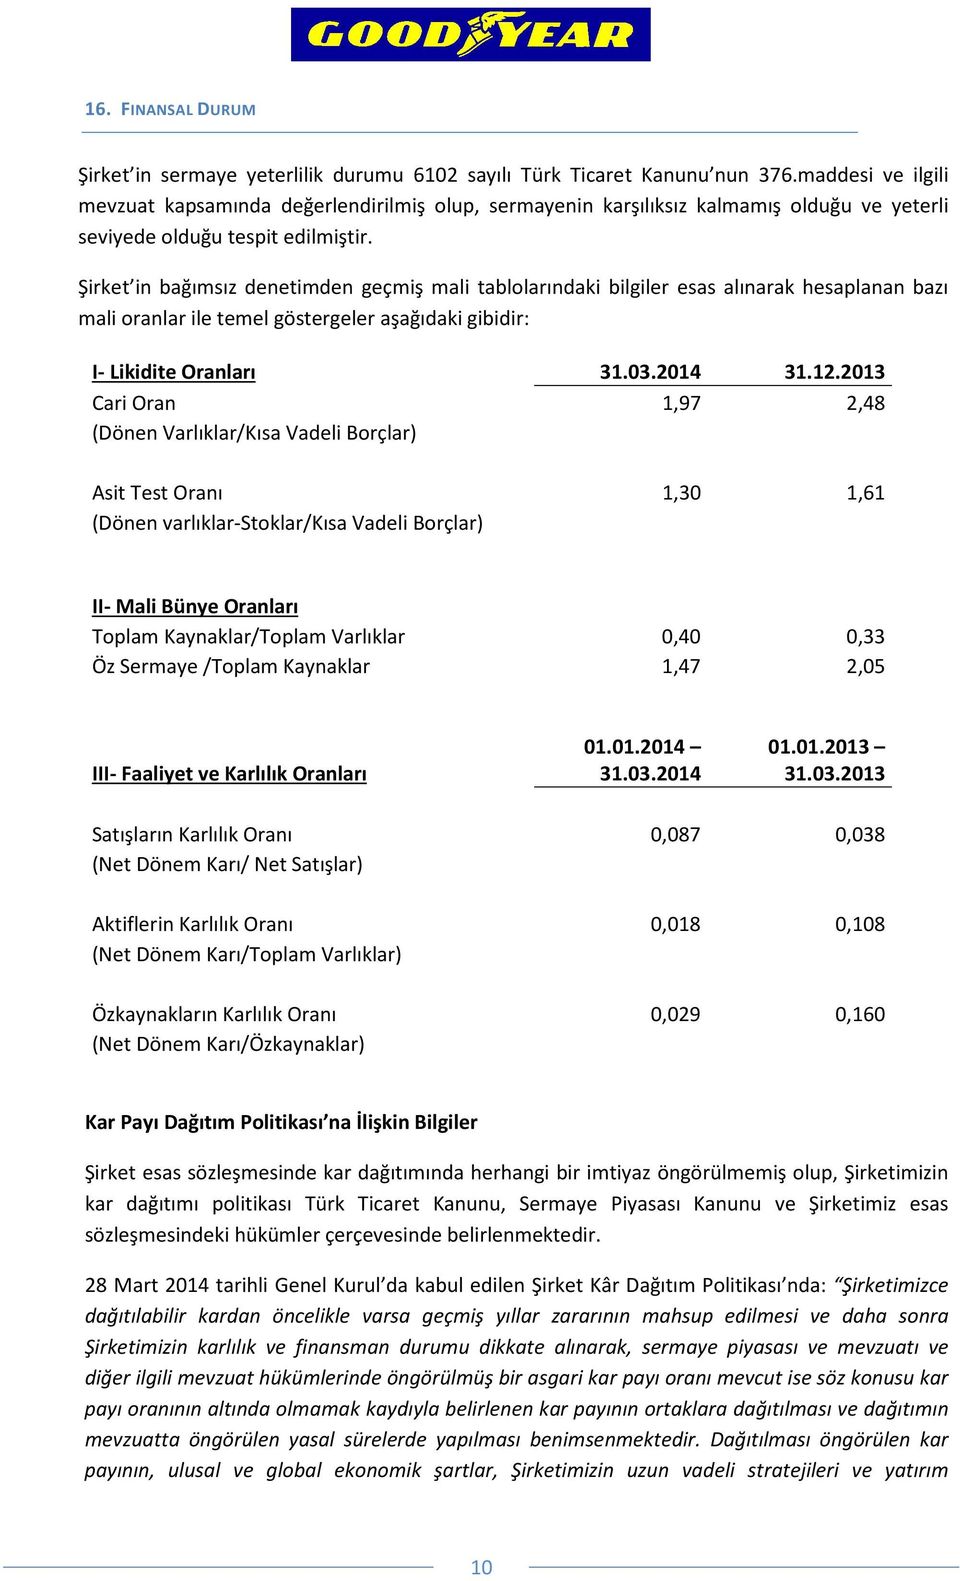 Şirket in bağımsız denetimden geçmiş mali tablolarındaki bilgiler esas alınarak hesaplanan bazı mali oranlar ile temel göstergeler aşağıdaki gibidir: I- Likidite Oranları 31.03.2014 31.12.